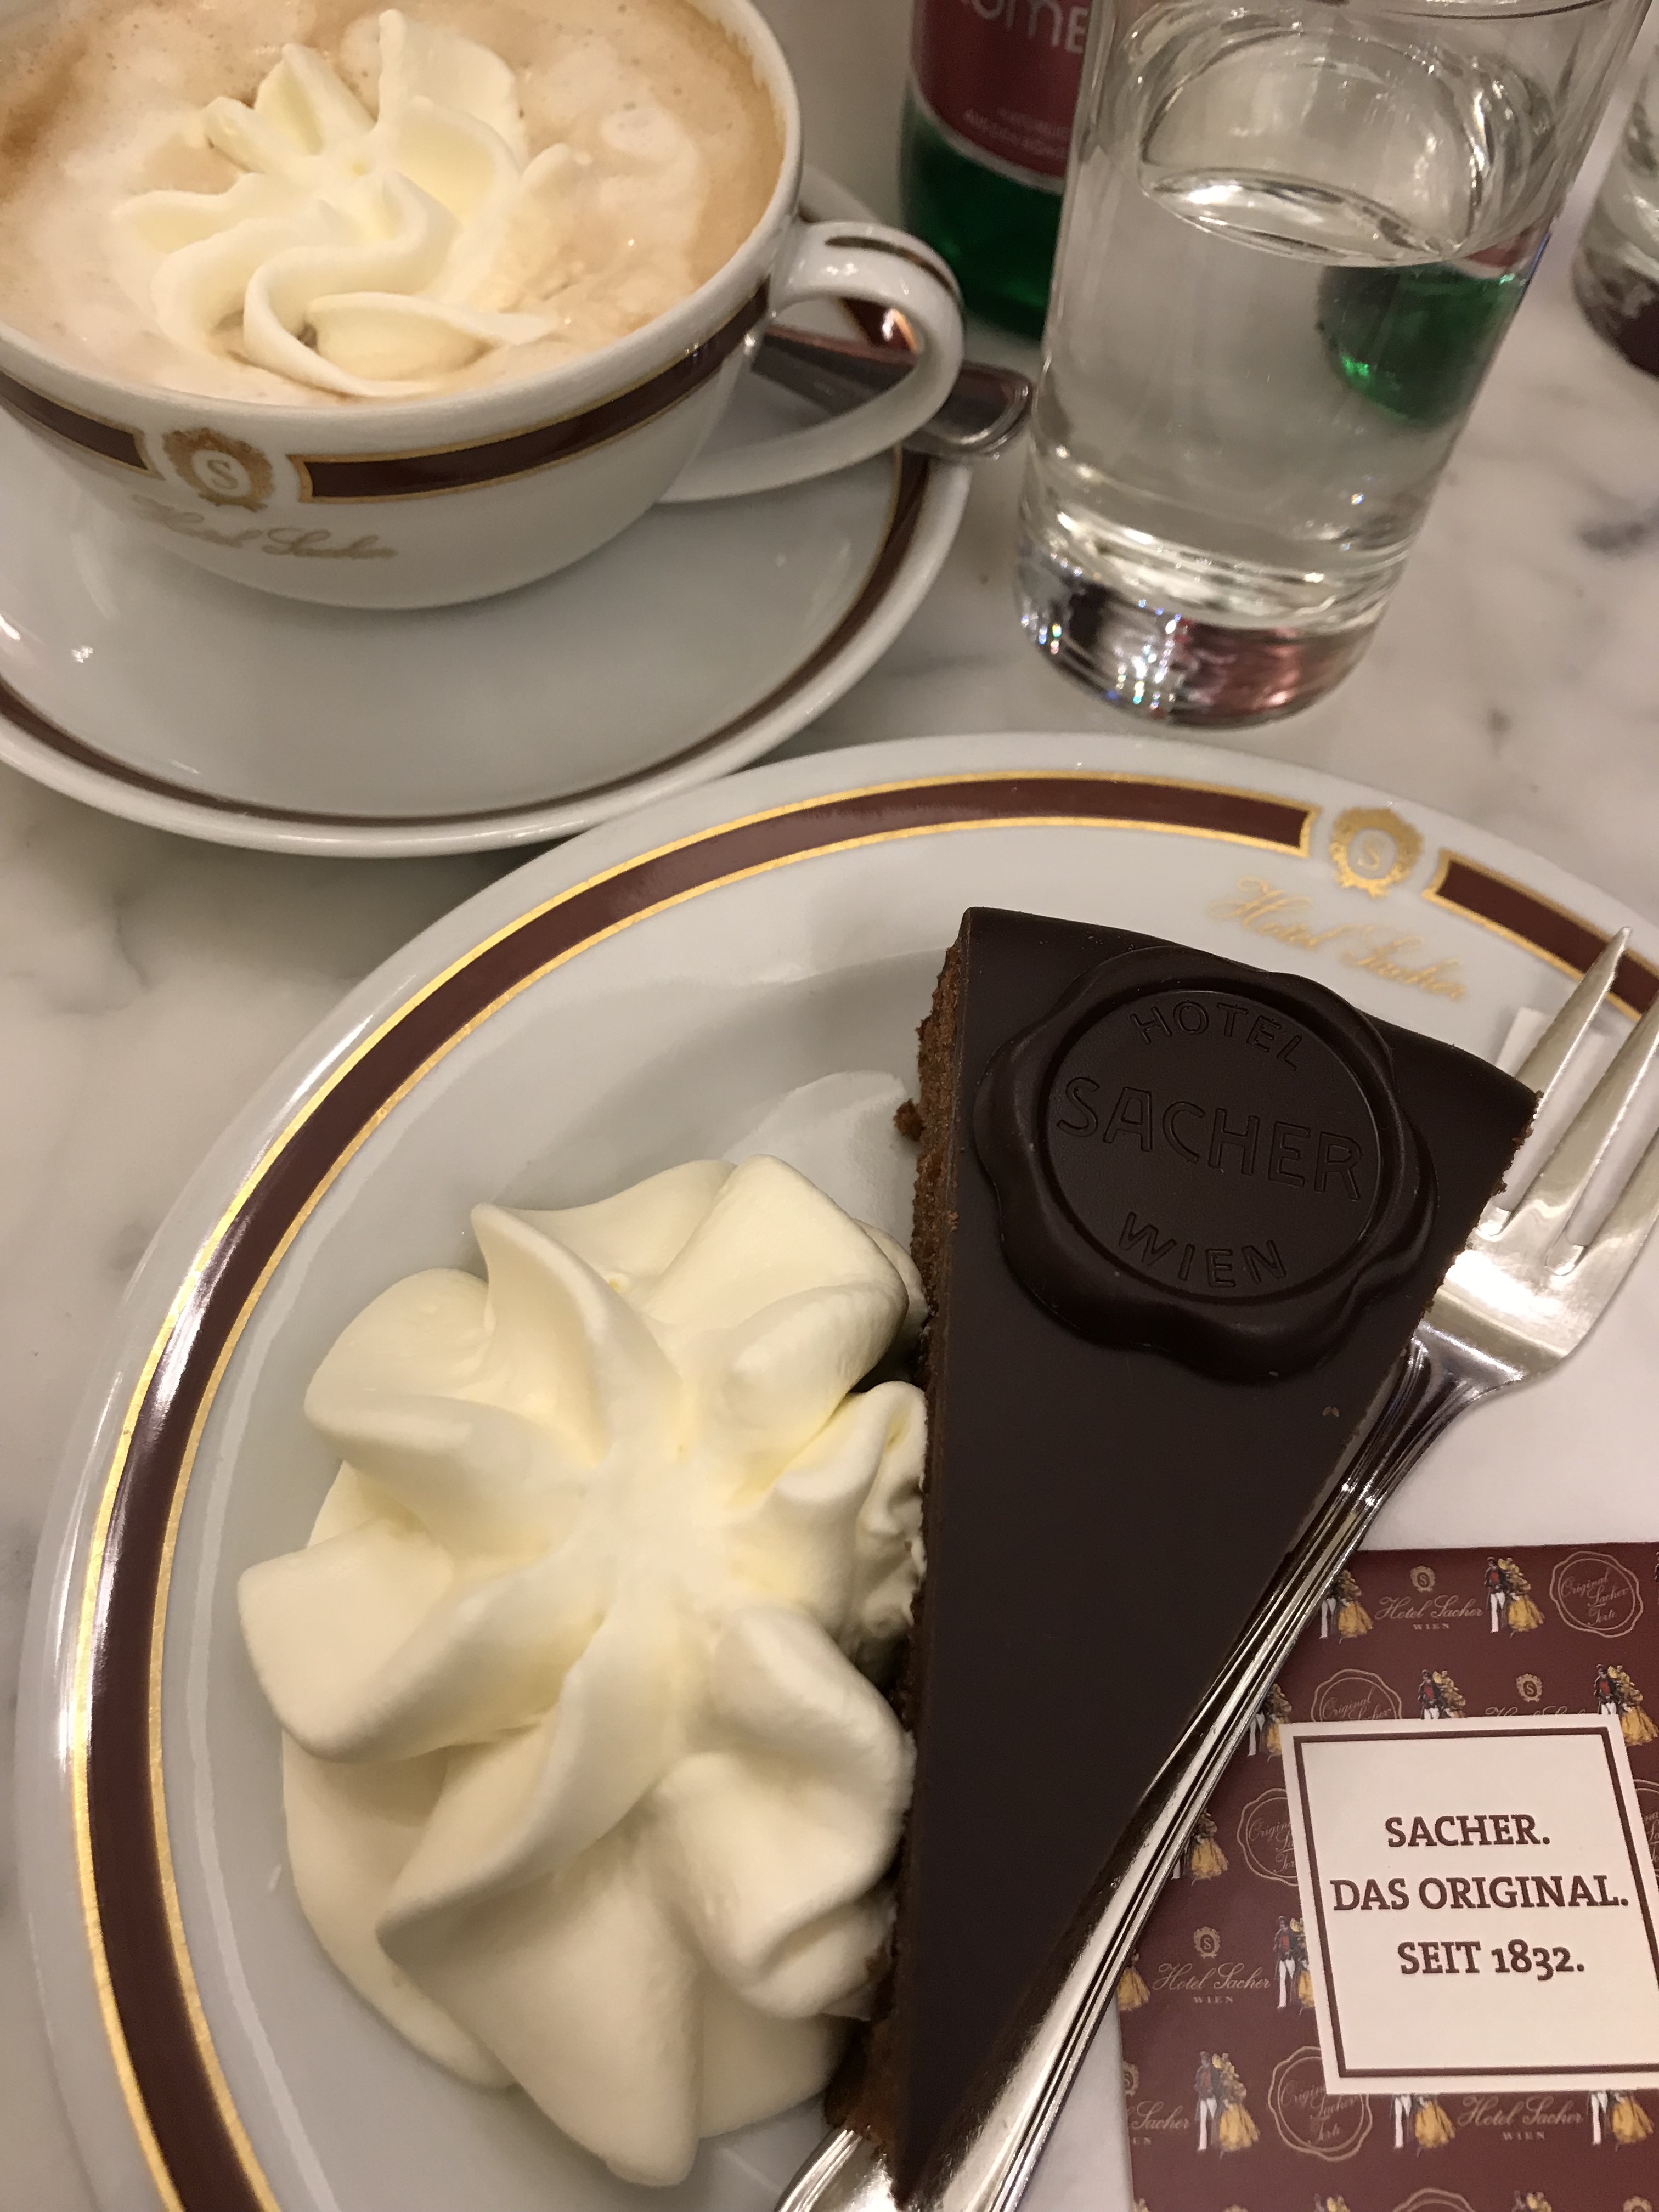 Sachertorte chocolate cake with whipped cream at Hotel Sacher in Vienna